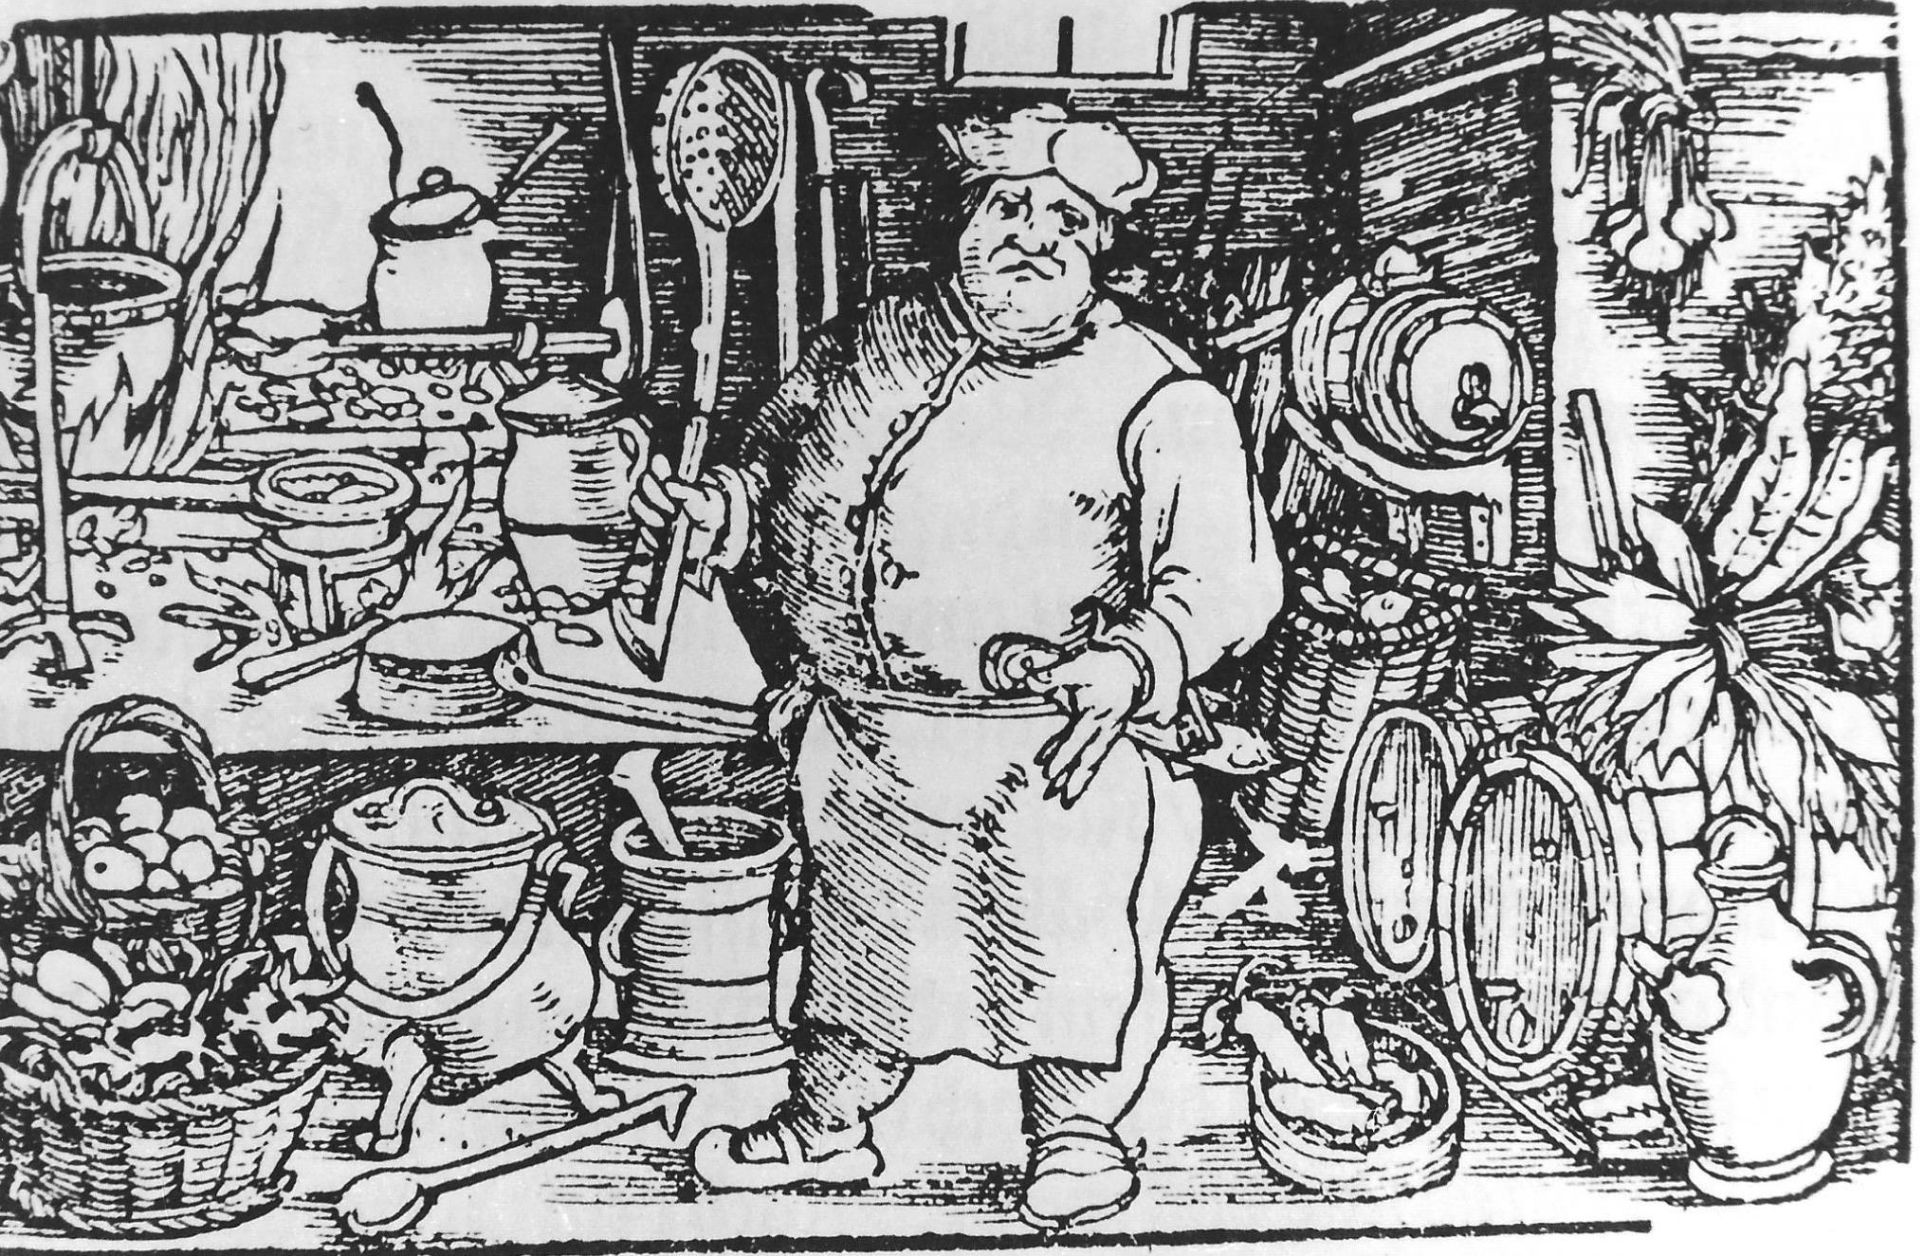 Kuchnia i historia: odkrywanie przeszłości i współczesne trendy kulinarne